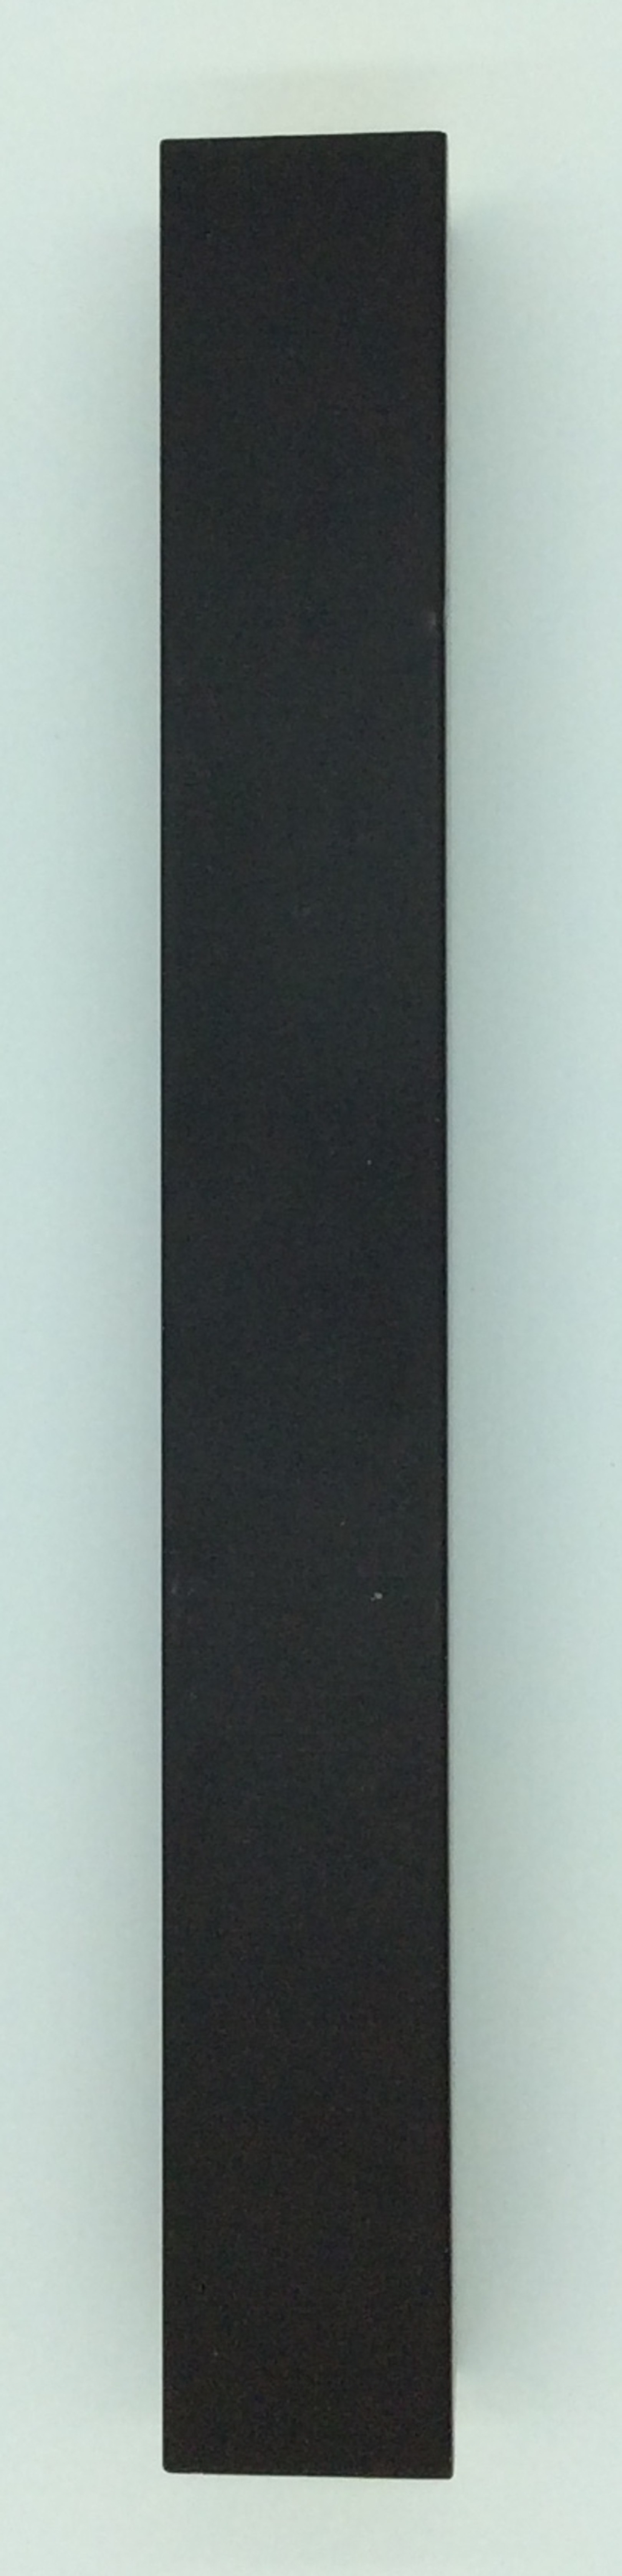 Cornice a cassettone americano nero 60x90